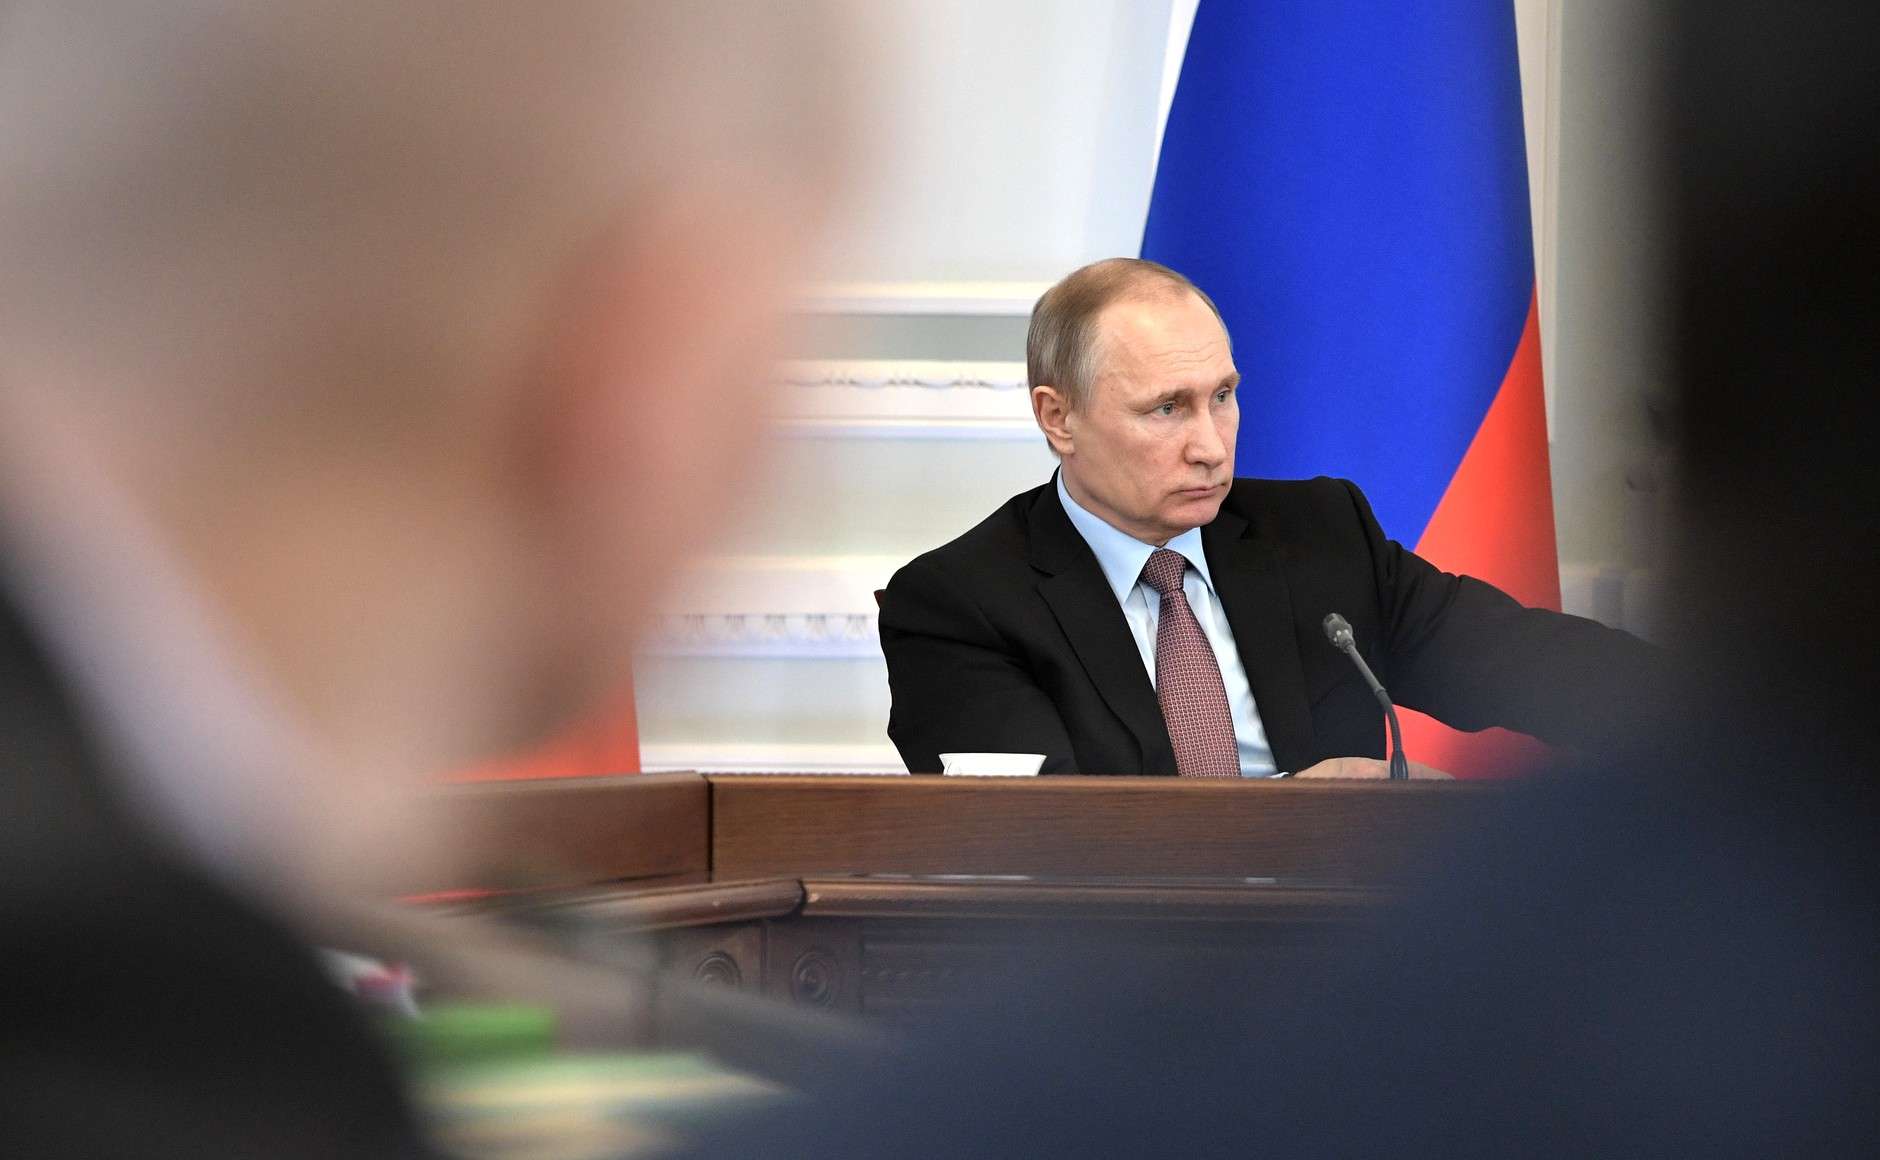 Ο Πούτιν μιλά για τον διάδοχό του και πως θα επιλεγεί